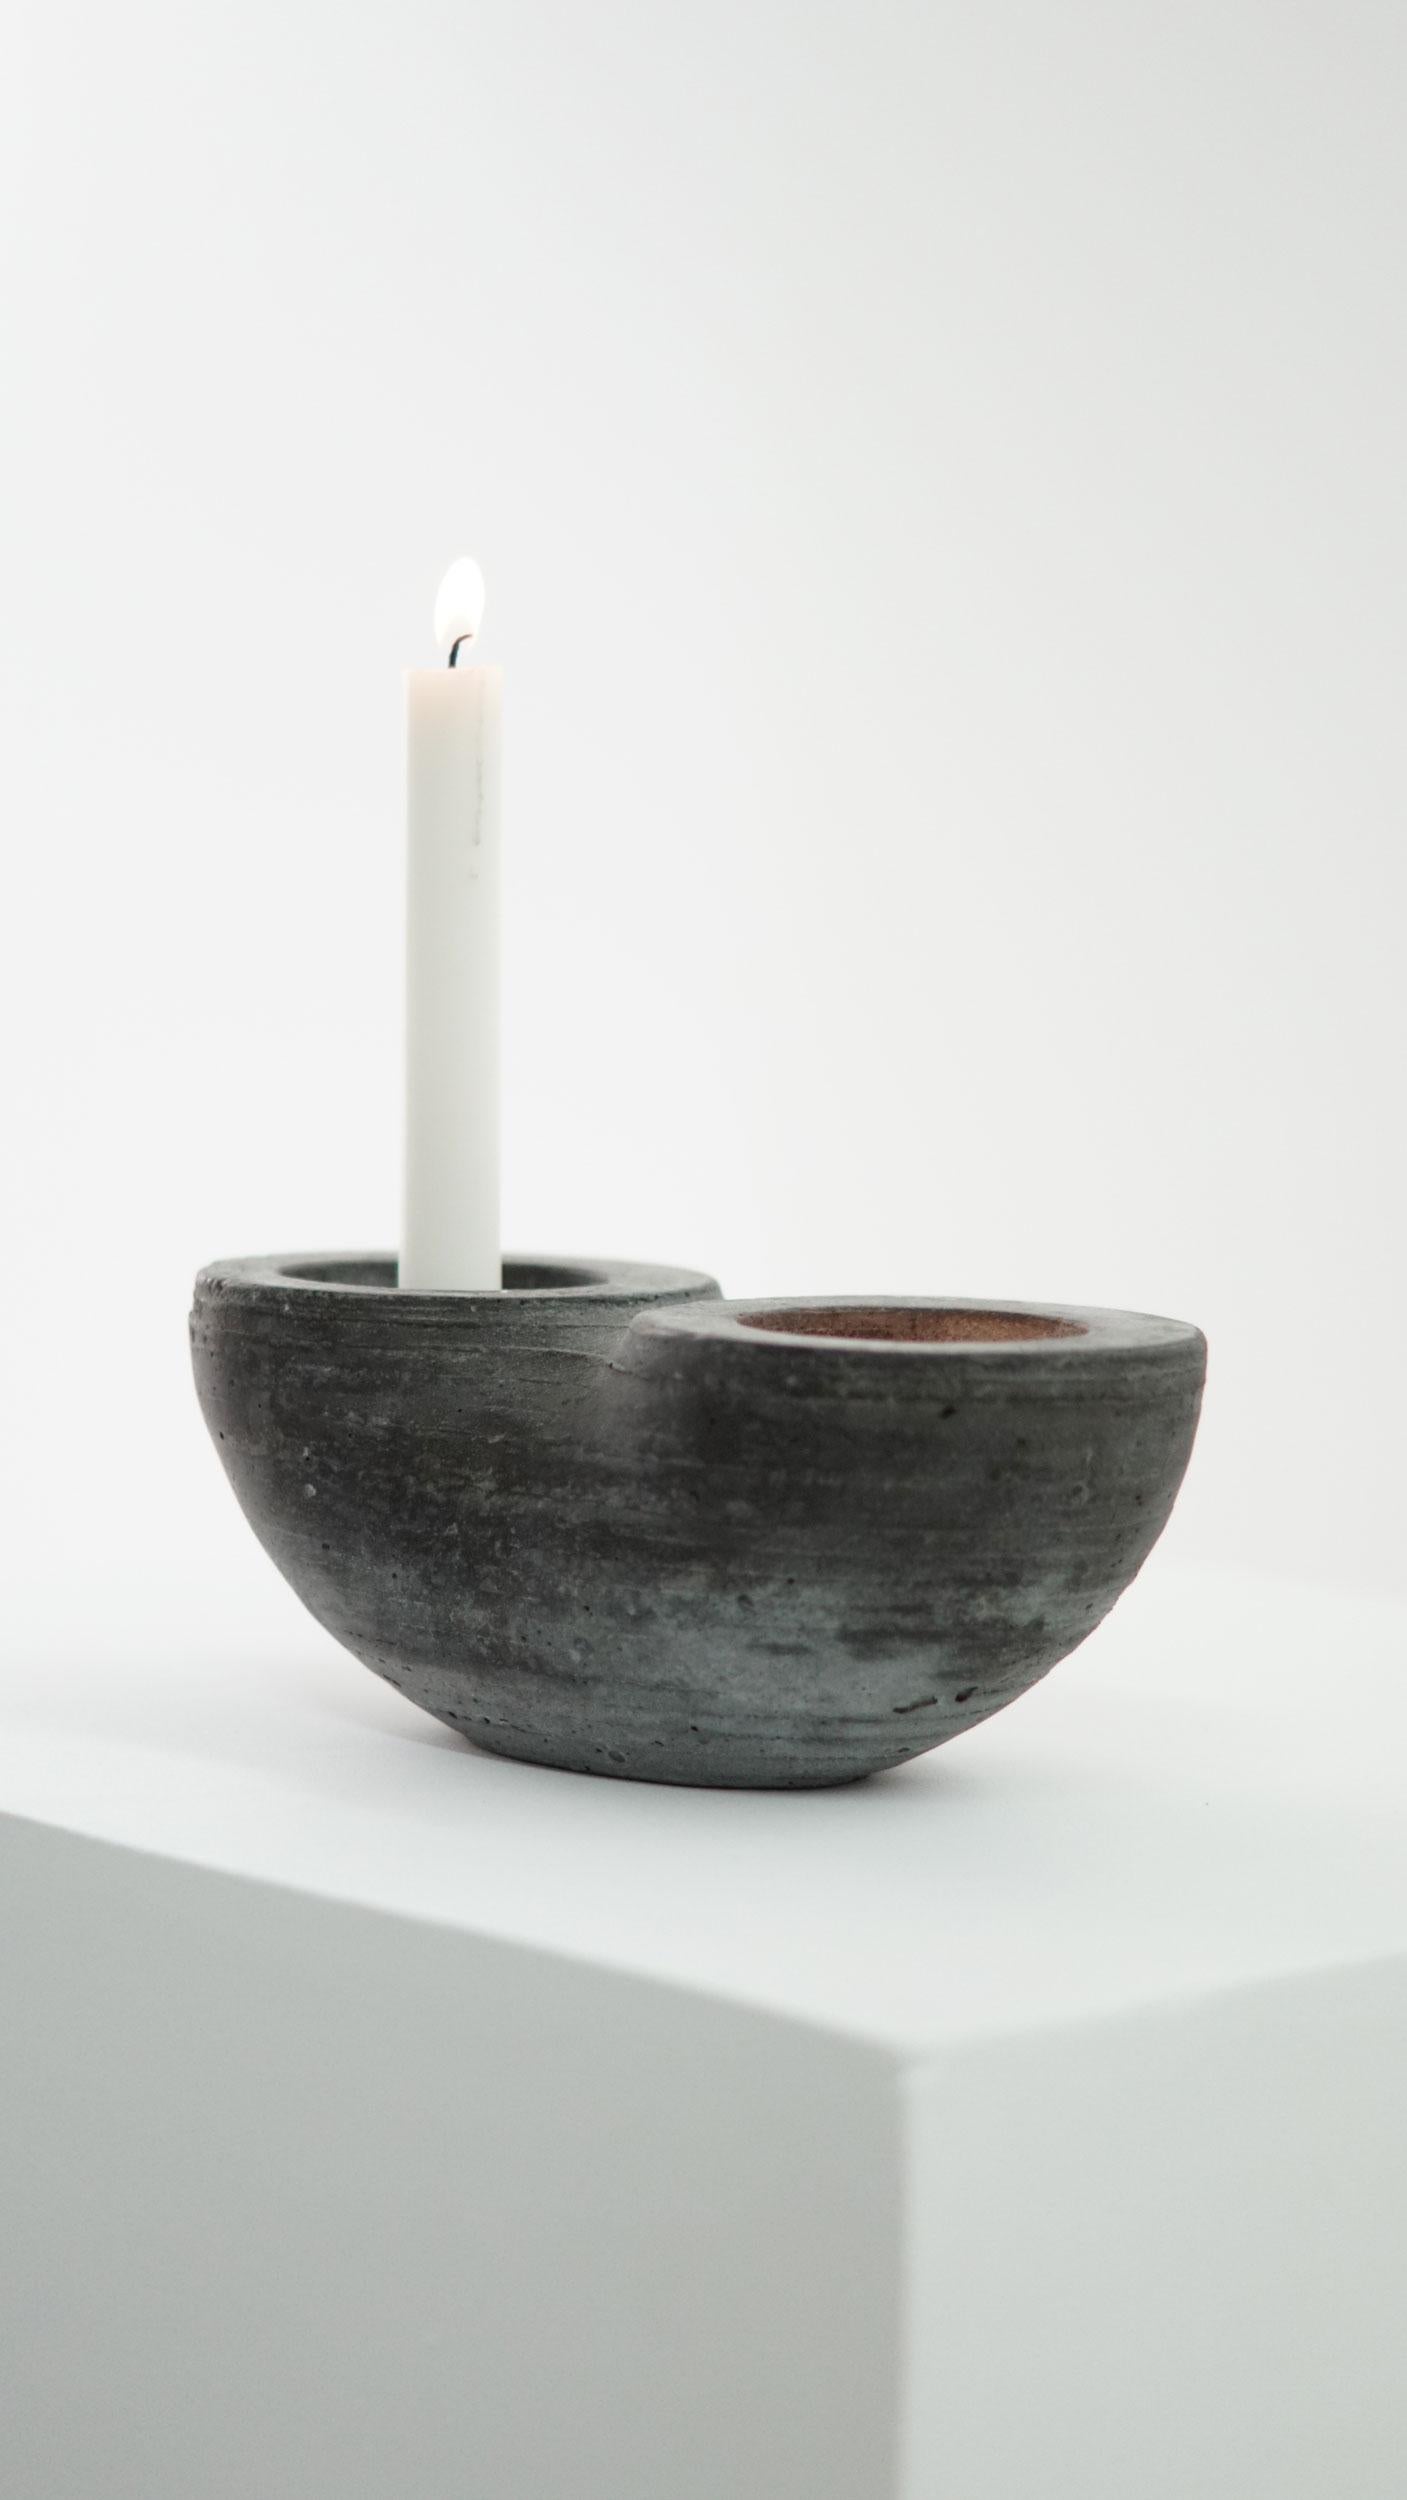 Kerzenhalter für 2 Kerzen.

Die Debütkollektion von Concrete Poetics aus handgegossenem Zement für skulpturale Möbel und Accessoires liegt an der Schnittstelle zwischen Kunst, Handwerk und Design und bietet visuell faszinierende und dynamische